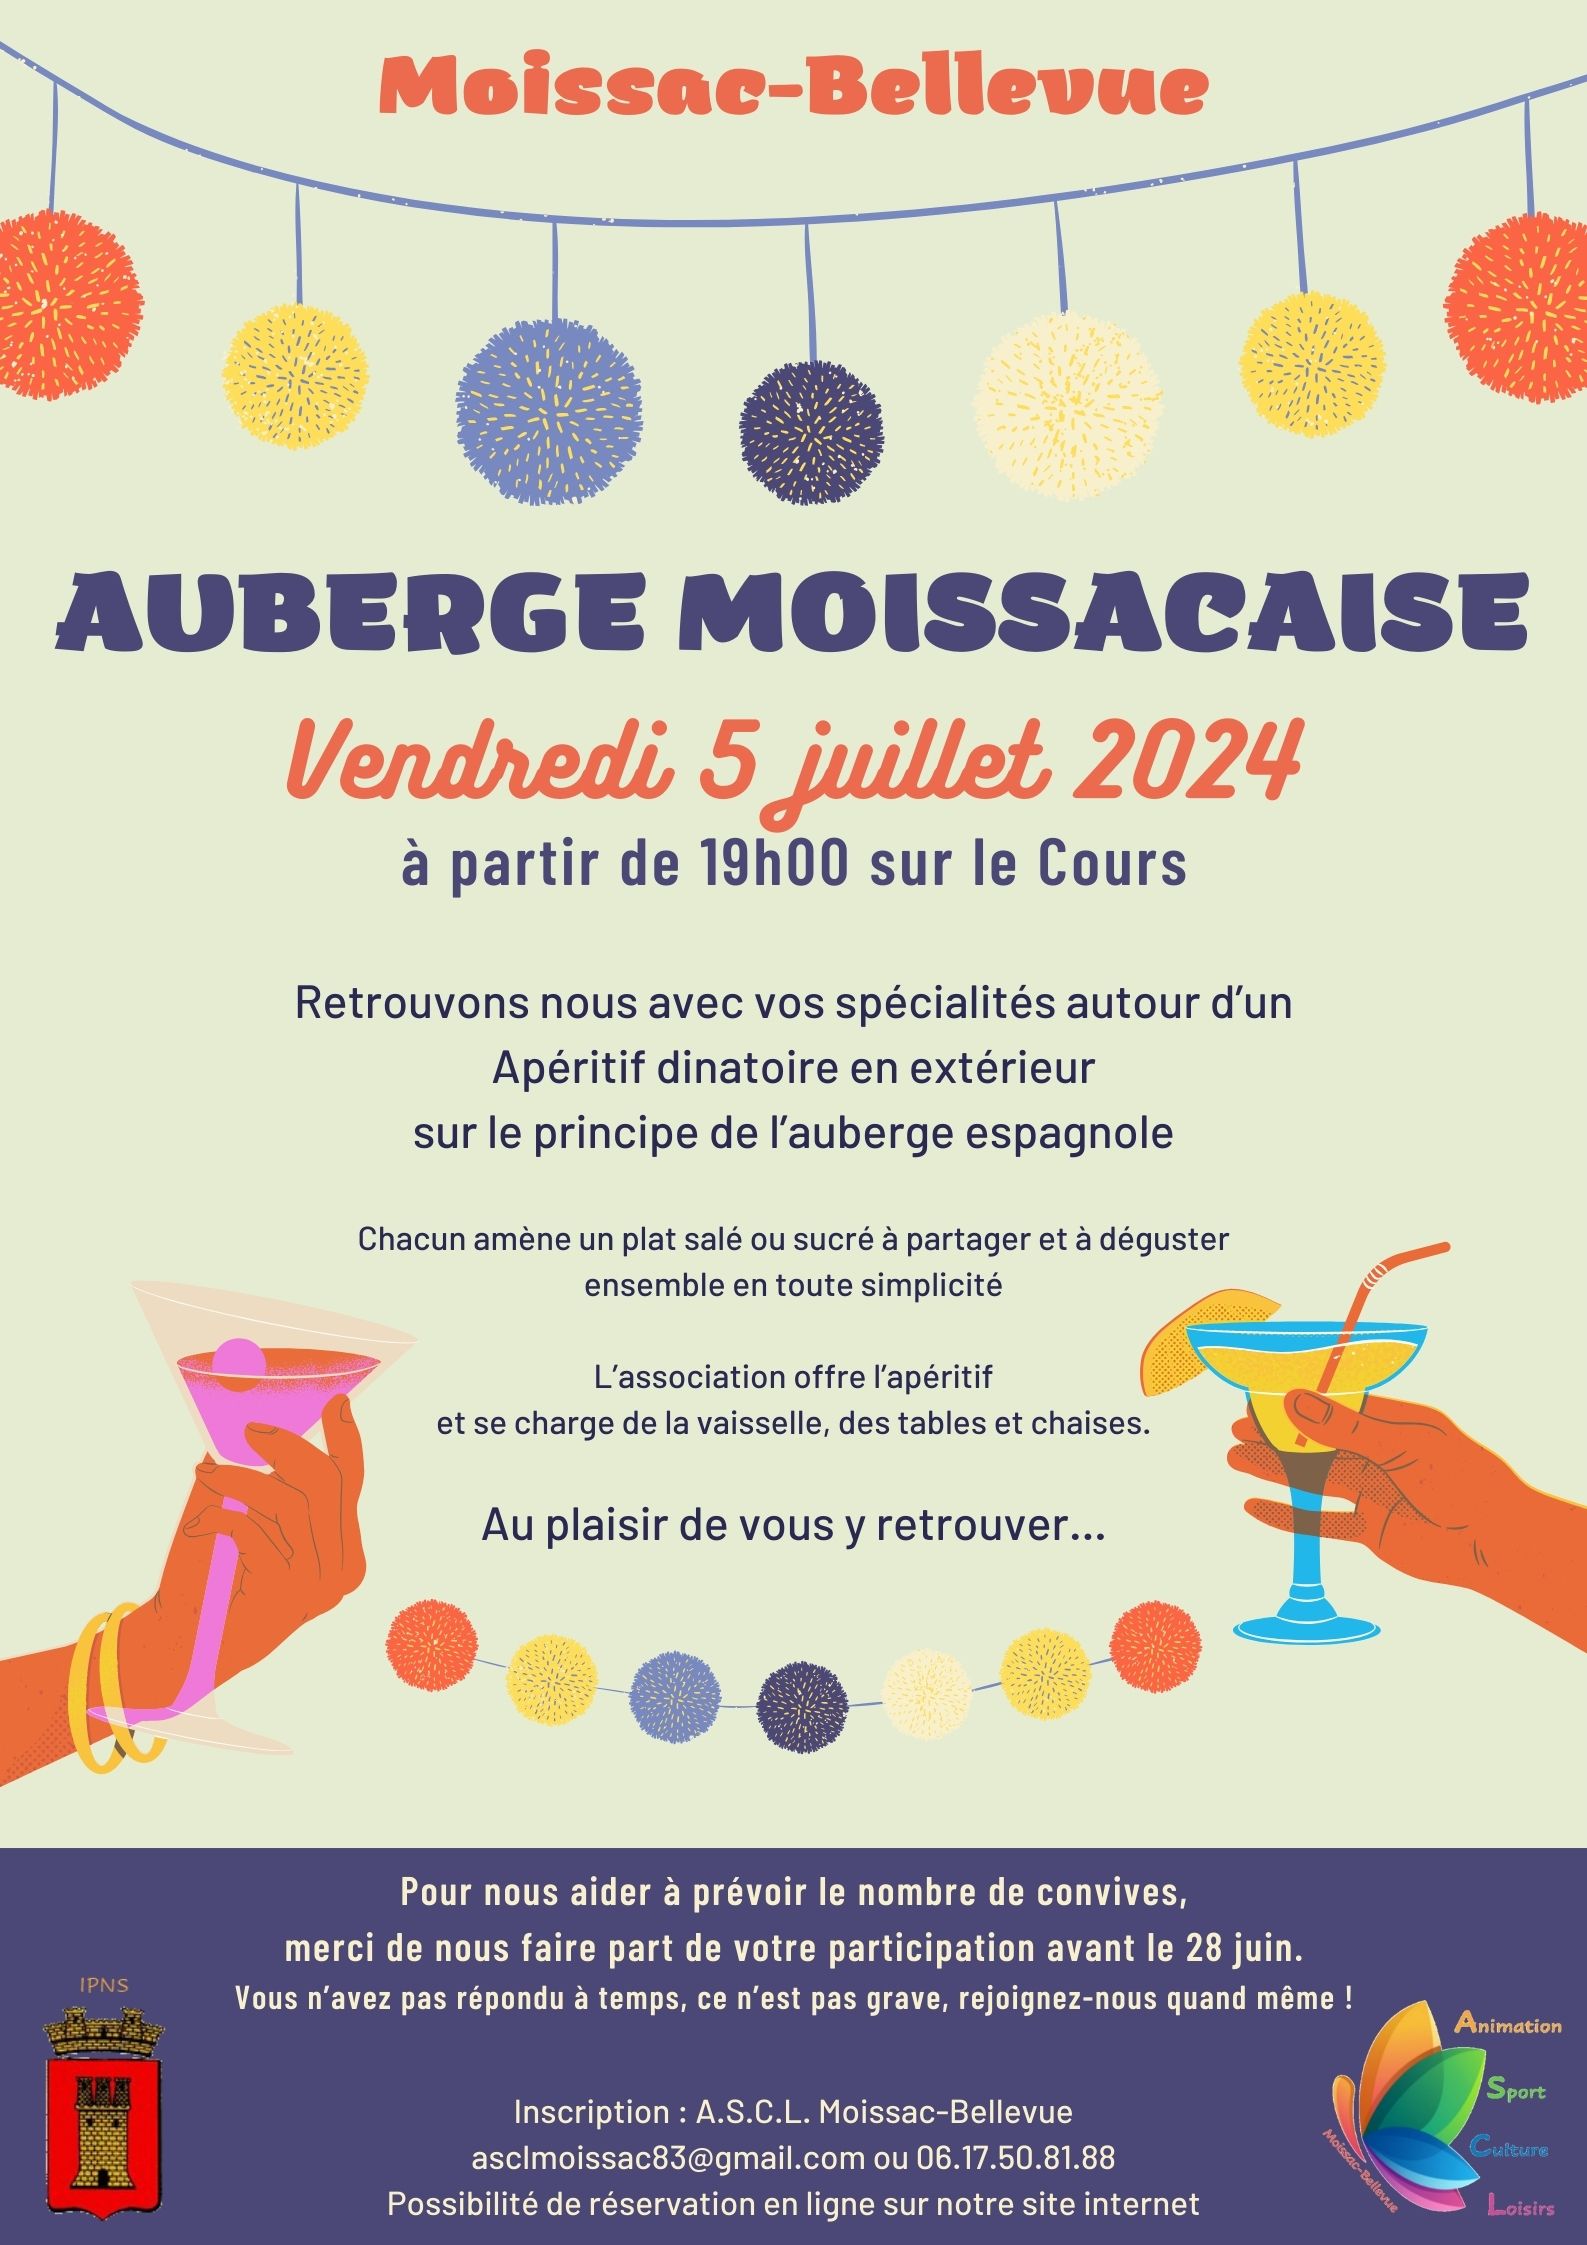 Auberge Moissacaise - Auberge Moissacaise